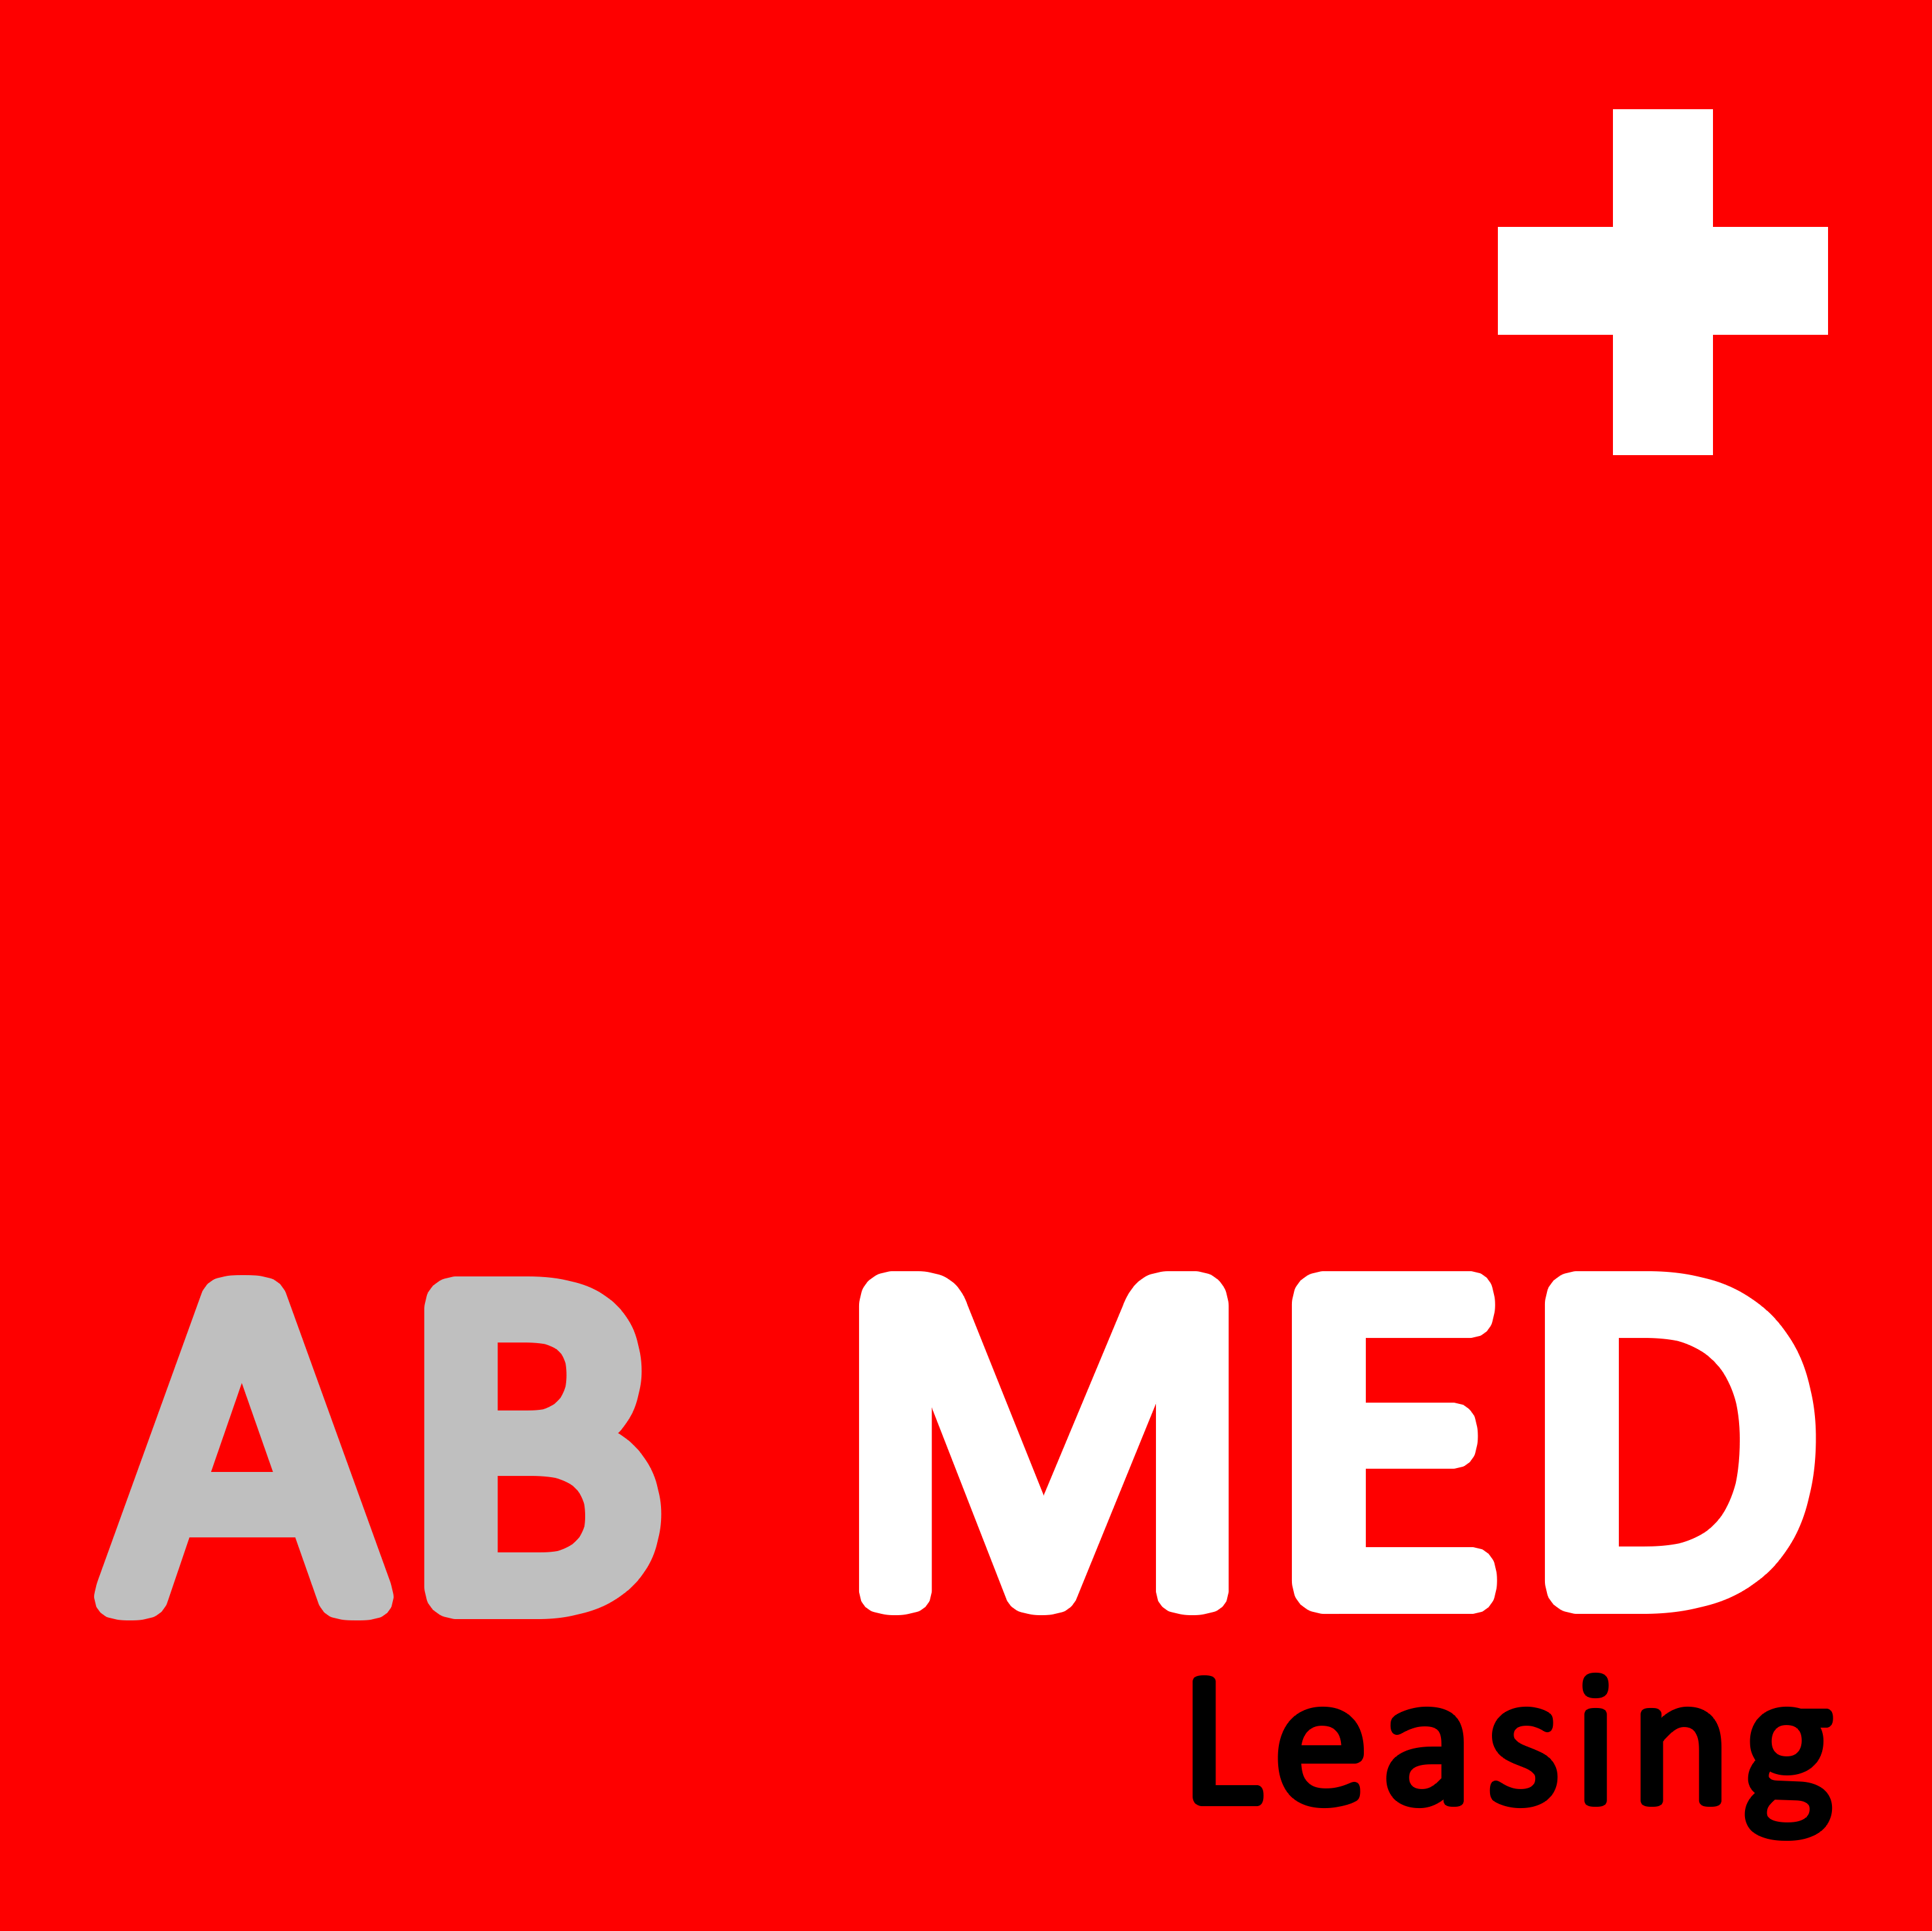 AB MED Leasing